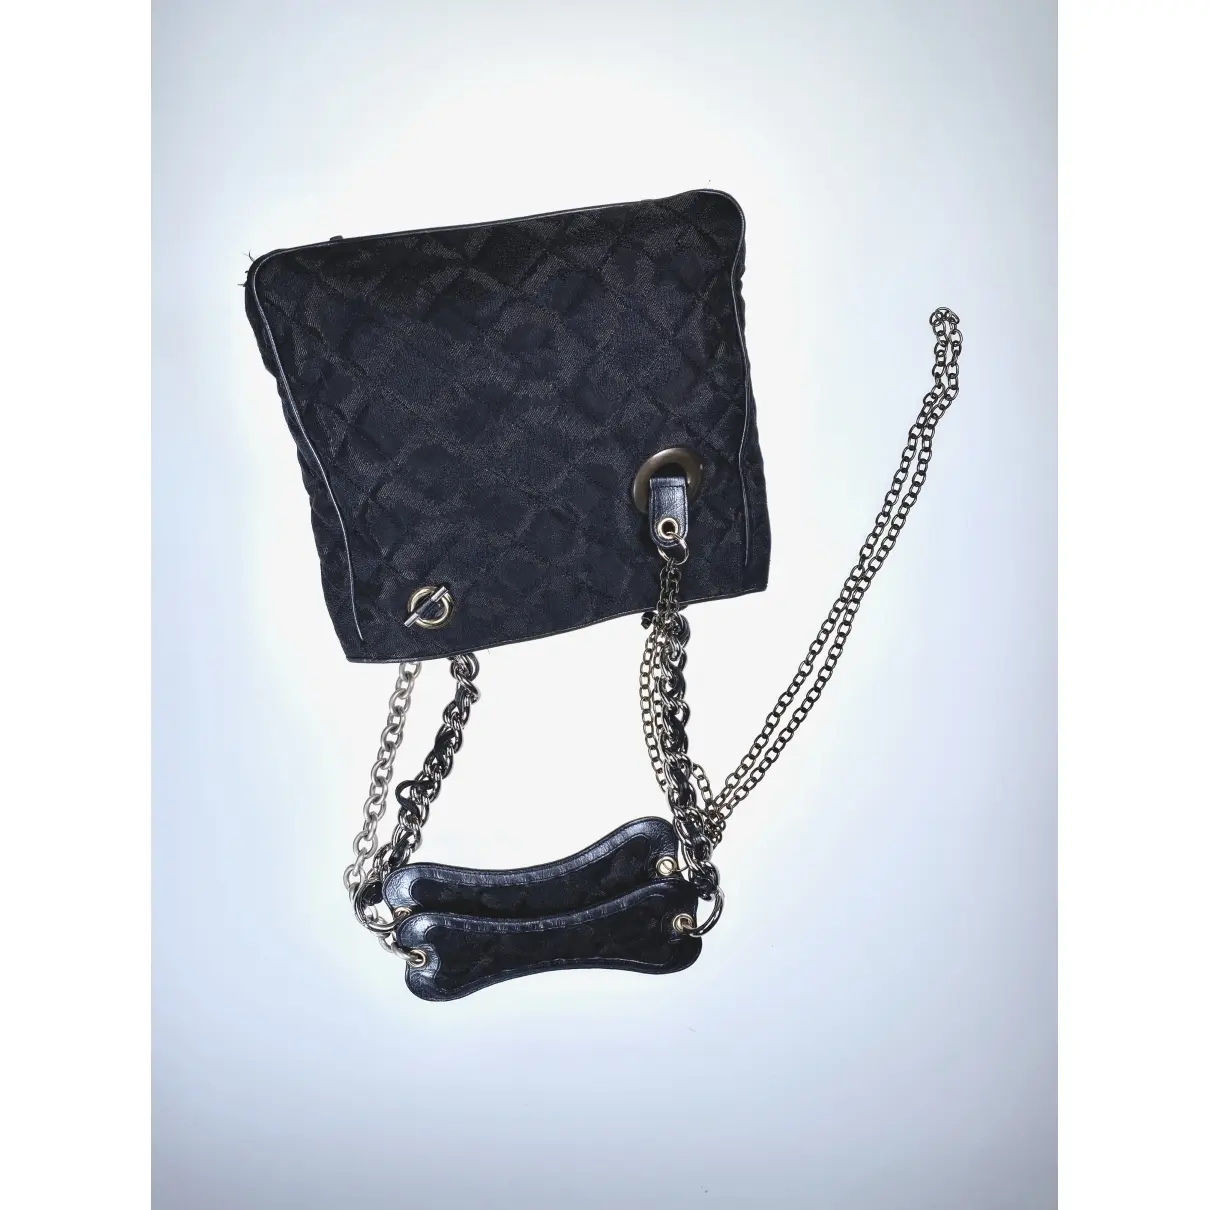 Vivienne Westwood Cloth handbag for sale